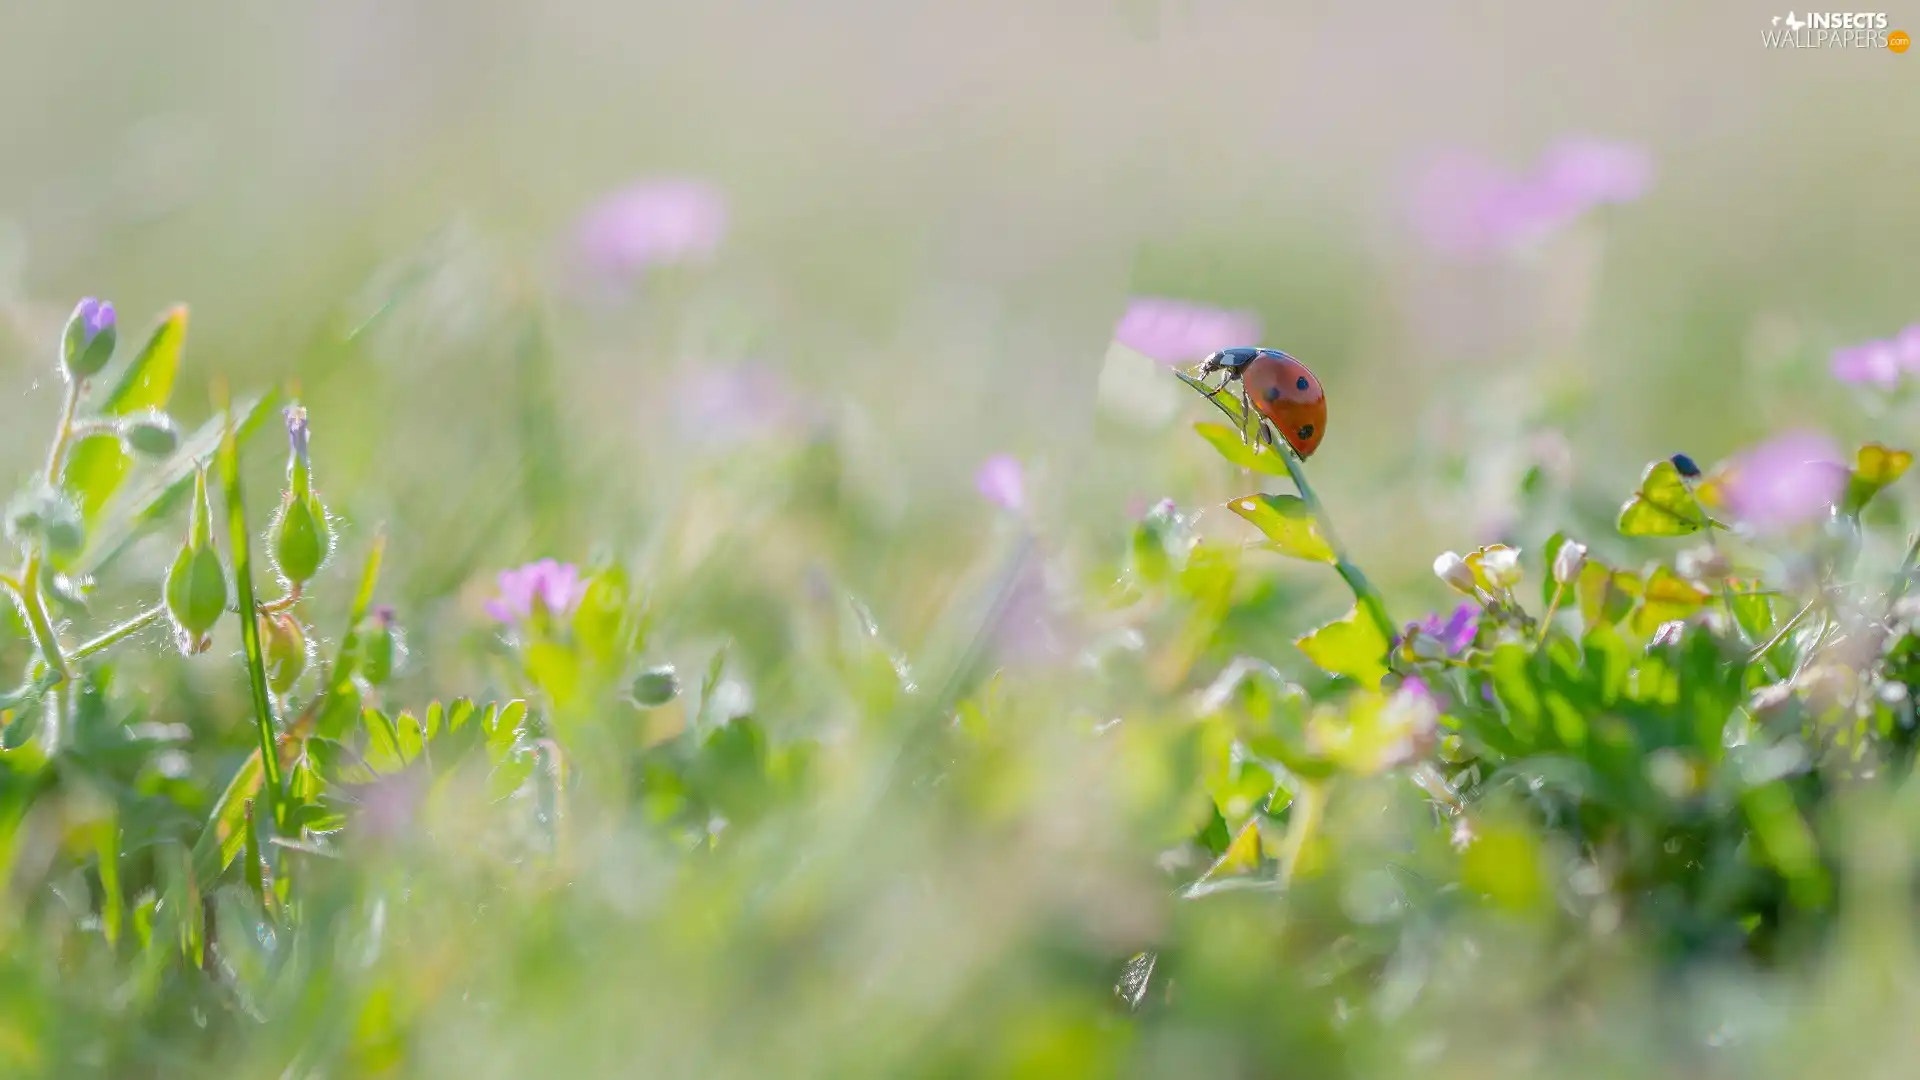 grass, ladybird, blurry background, Flowers